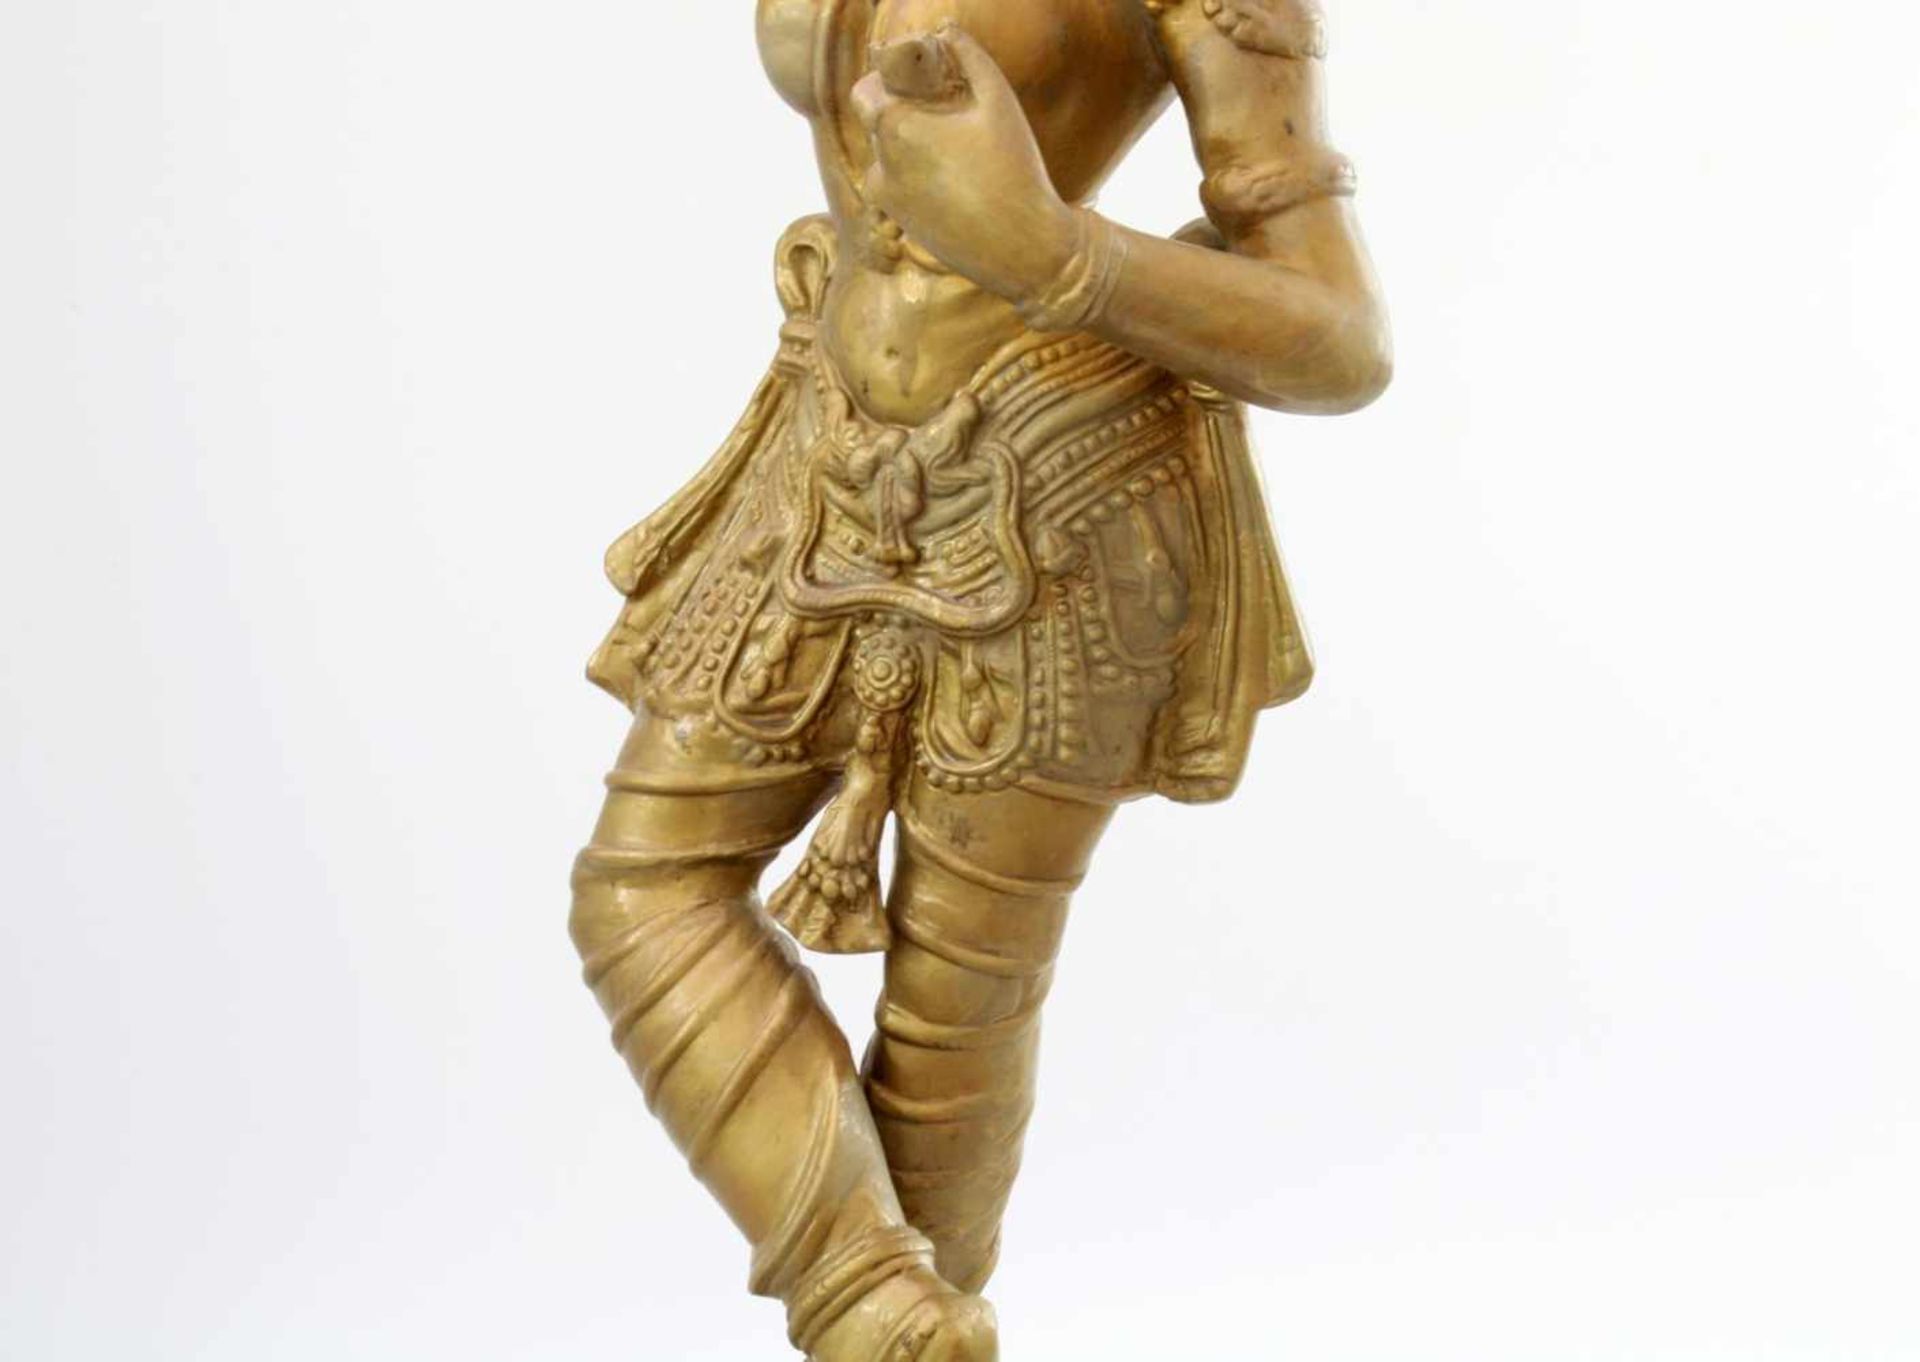 Apsara-Tänzerin - Indien Sich schminkende Figur, auf rundem Podestsockel, Messingguss. Höhe: 70 cm. - Bild 5 aus 5